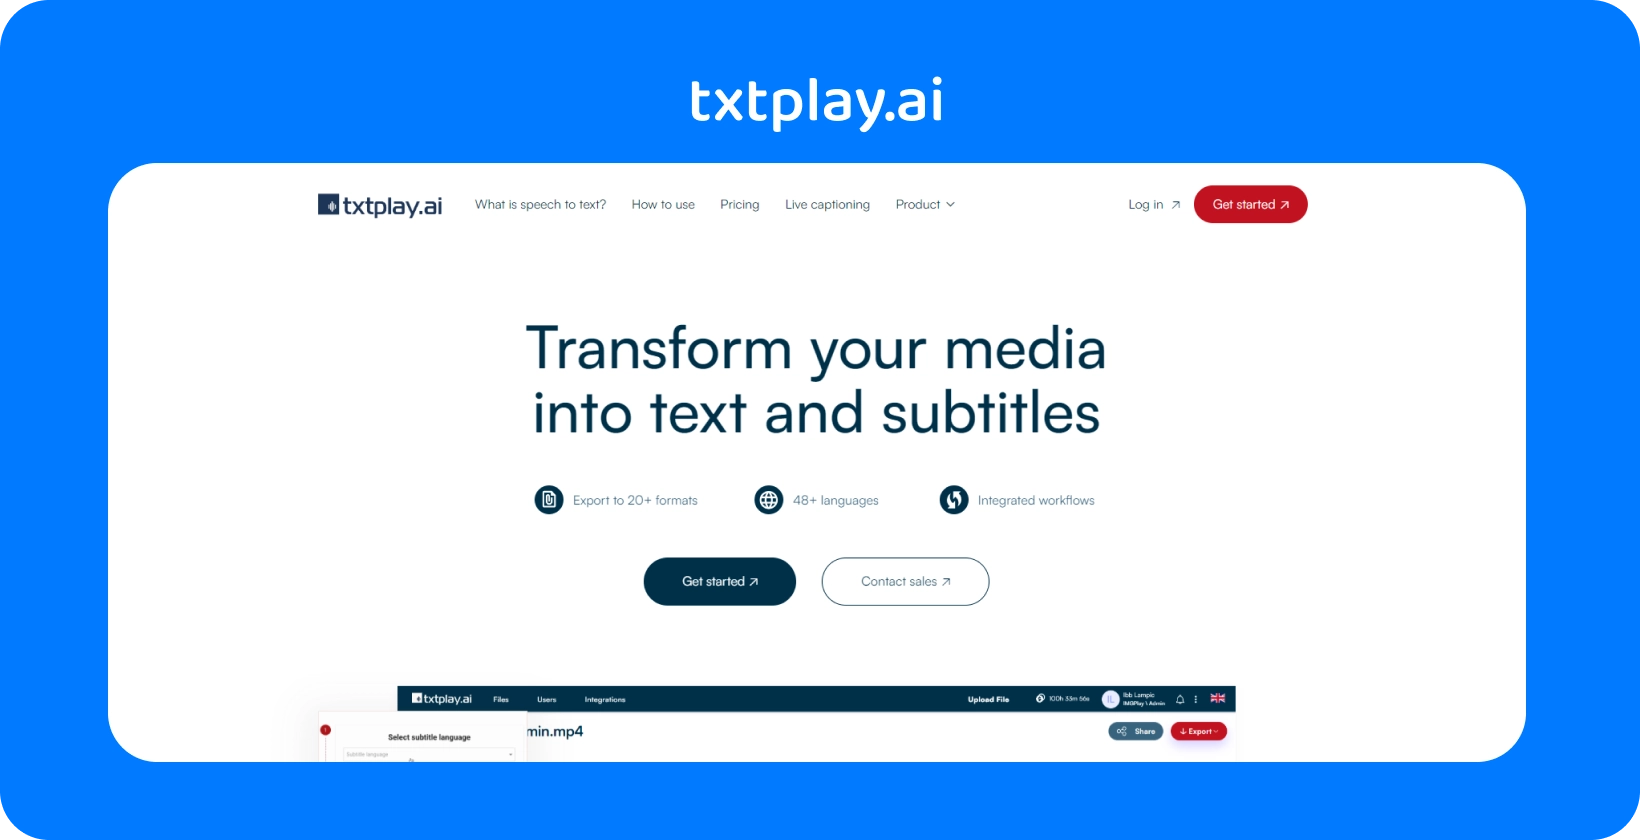 48+ dili ve 20+ formatı destekleyen txtplay.ai ile medyayı metne ve altyazılara dönüştürün.